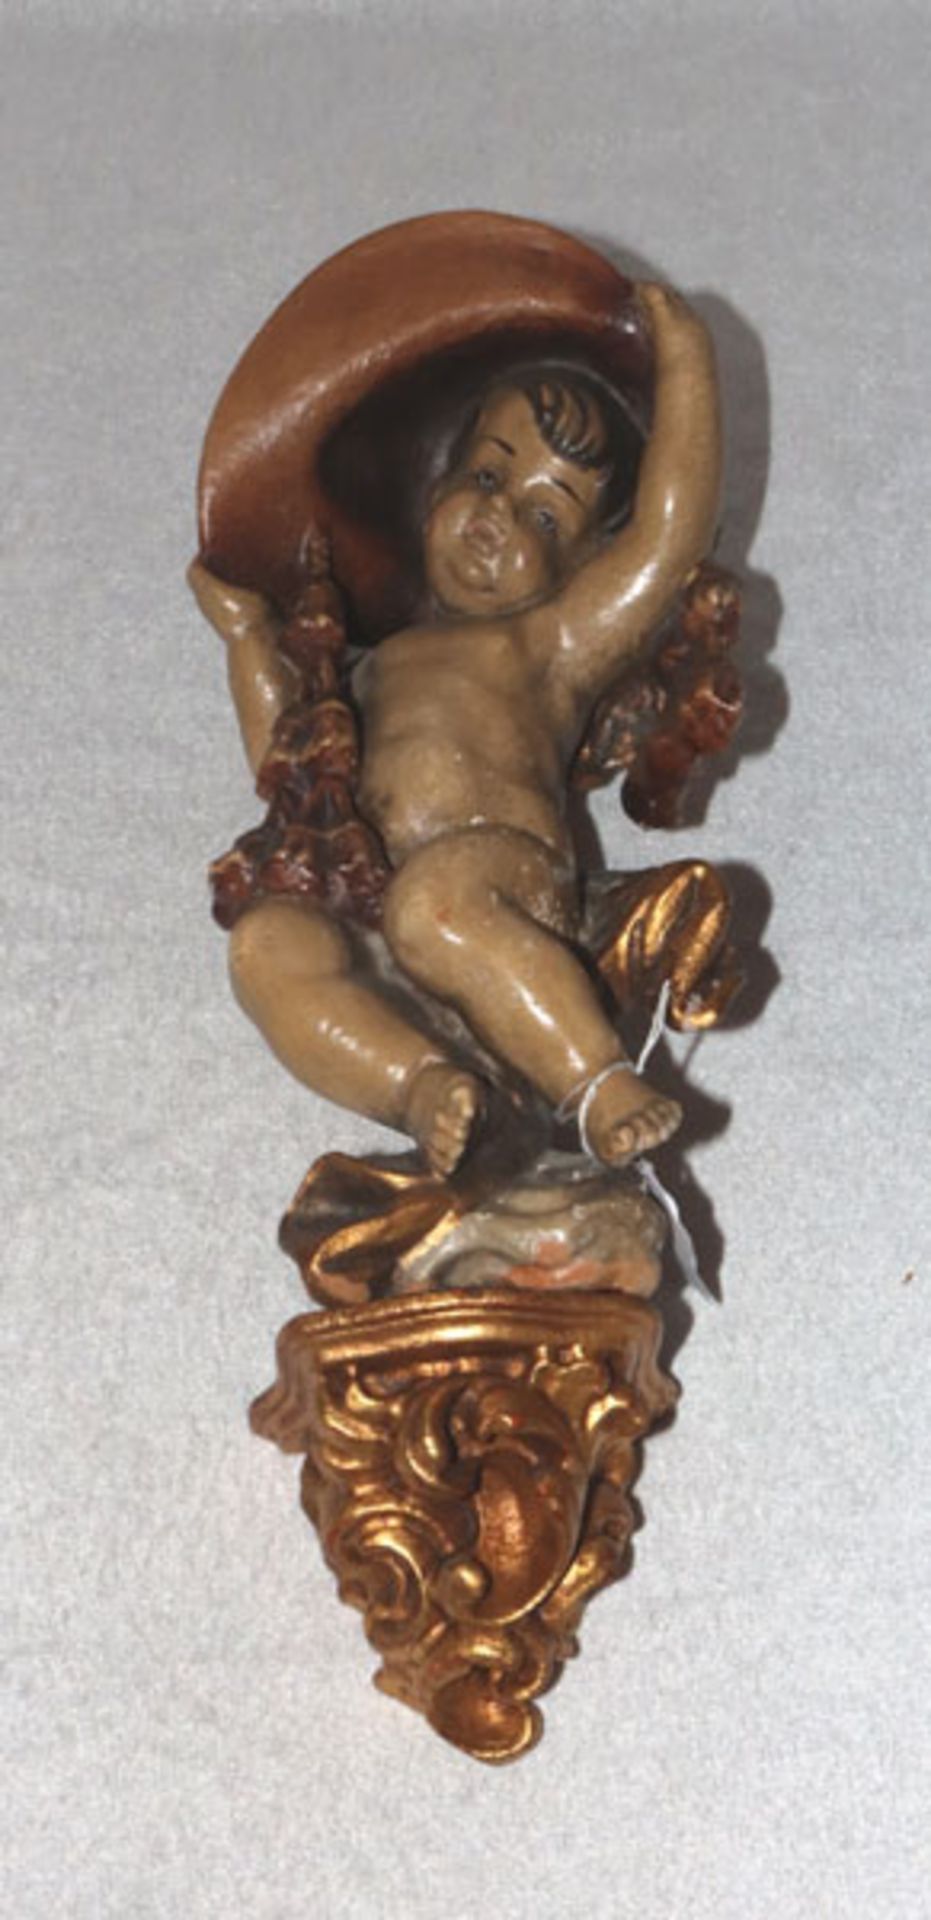 Holz Figurenskulptur 'Engel mit Kardinalshut' und Wandsockel, farbig gefaßt, teils bestossen, H 35